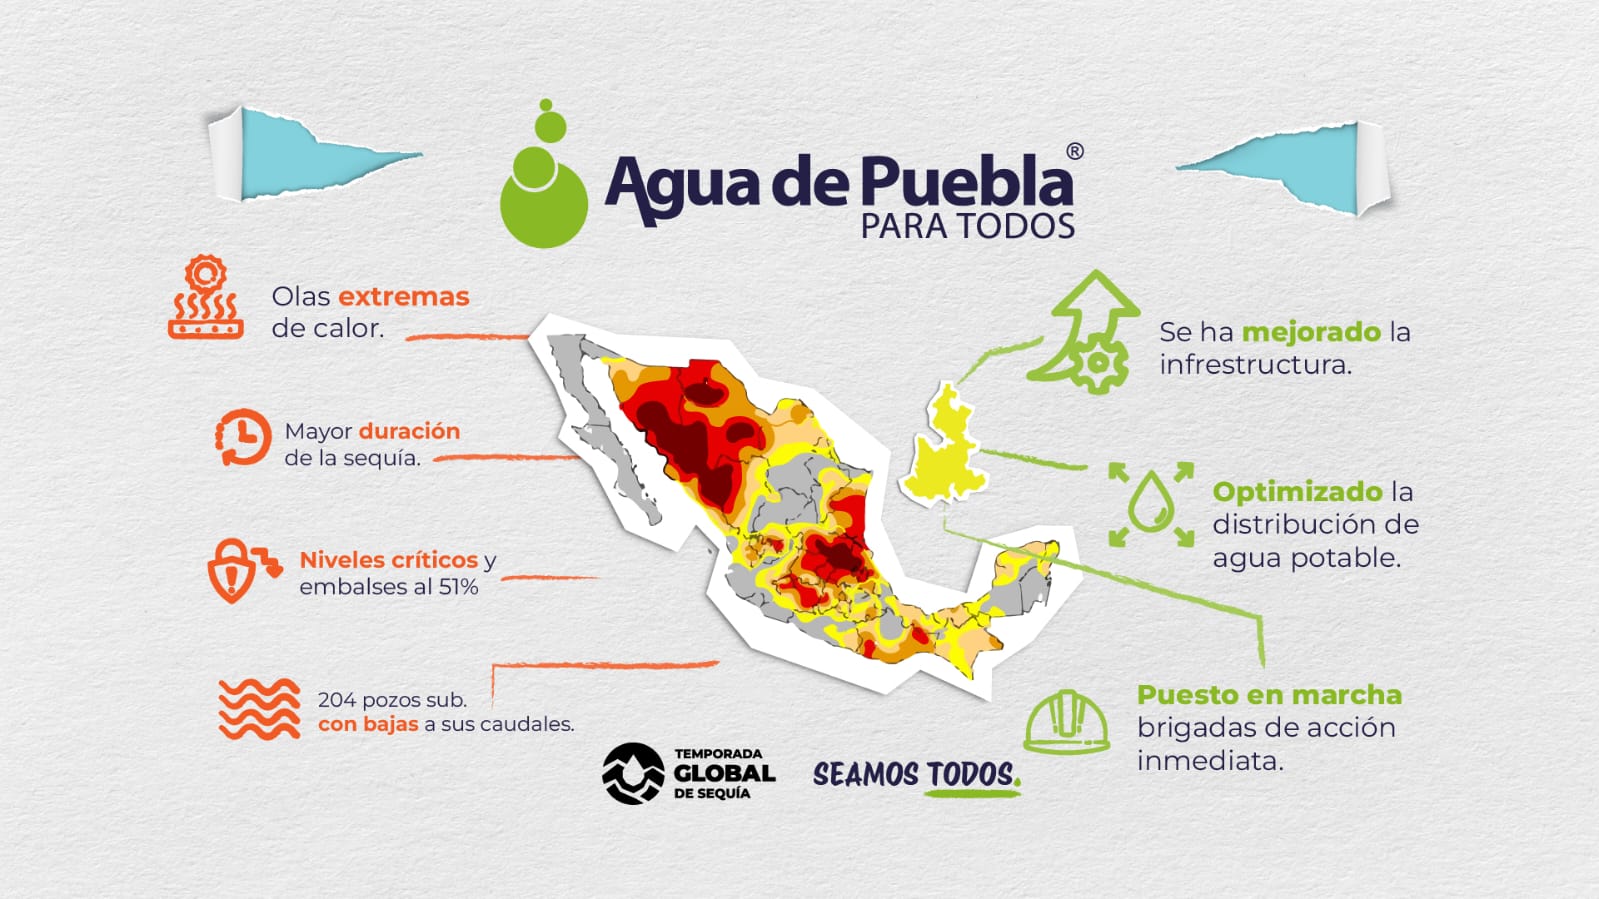 Ante la temporada global de sequía SOAPAP, Ayuntamientos y Agua de Puebla implementan nuevos horarios de servicio en algunas colonias, para garantizar el suministro de agua